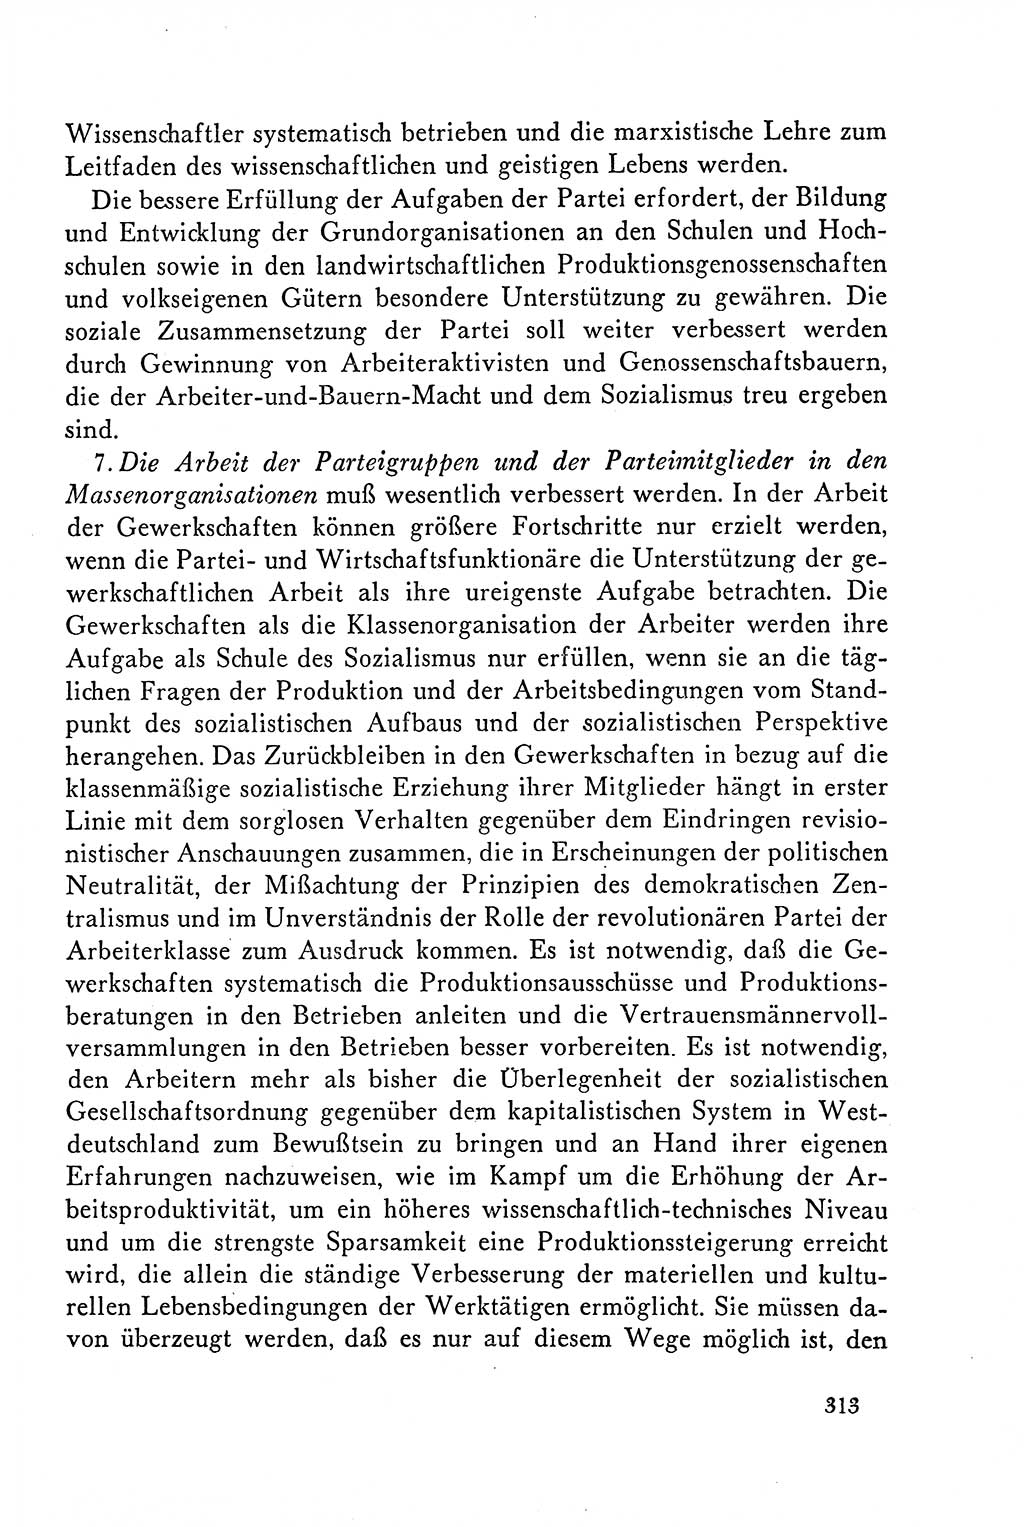 Dokumente der Sozialistischen Einheitspartei Deutschlands (SED) [Deutsche Demokratische Republik (DDR)] 1958-1959, Seite 313 (Dok. SED DDR 1958-1959, S. 313)